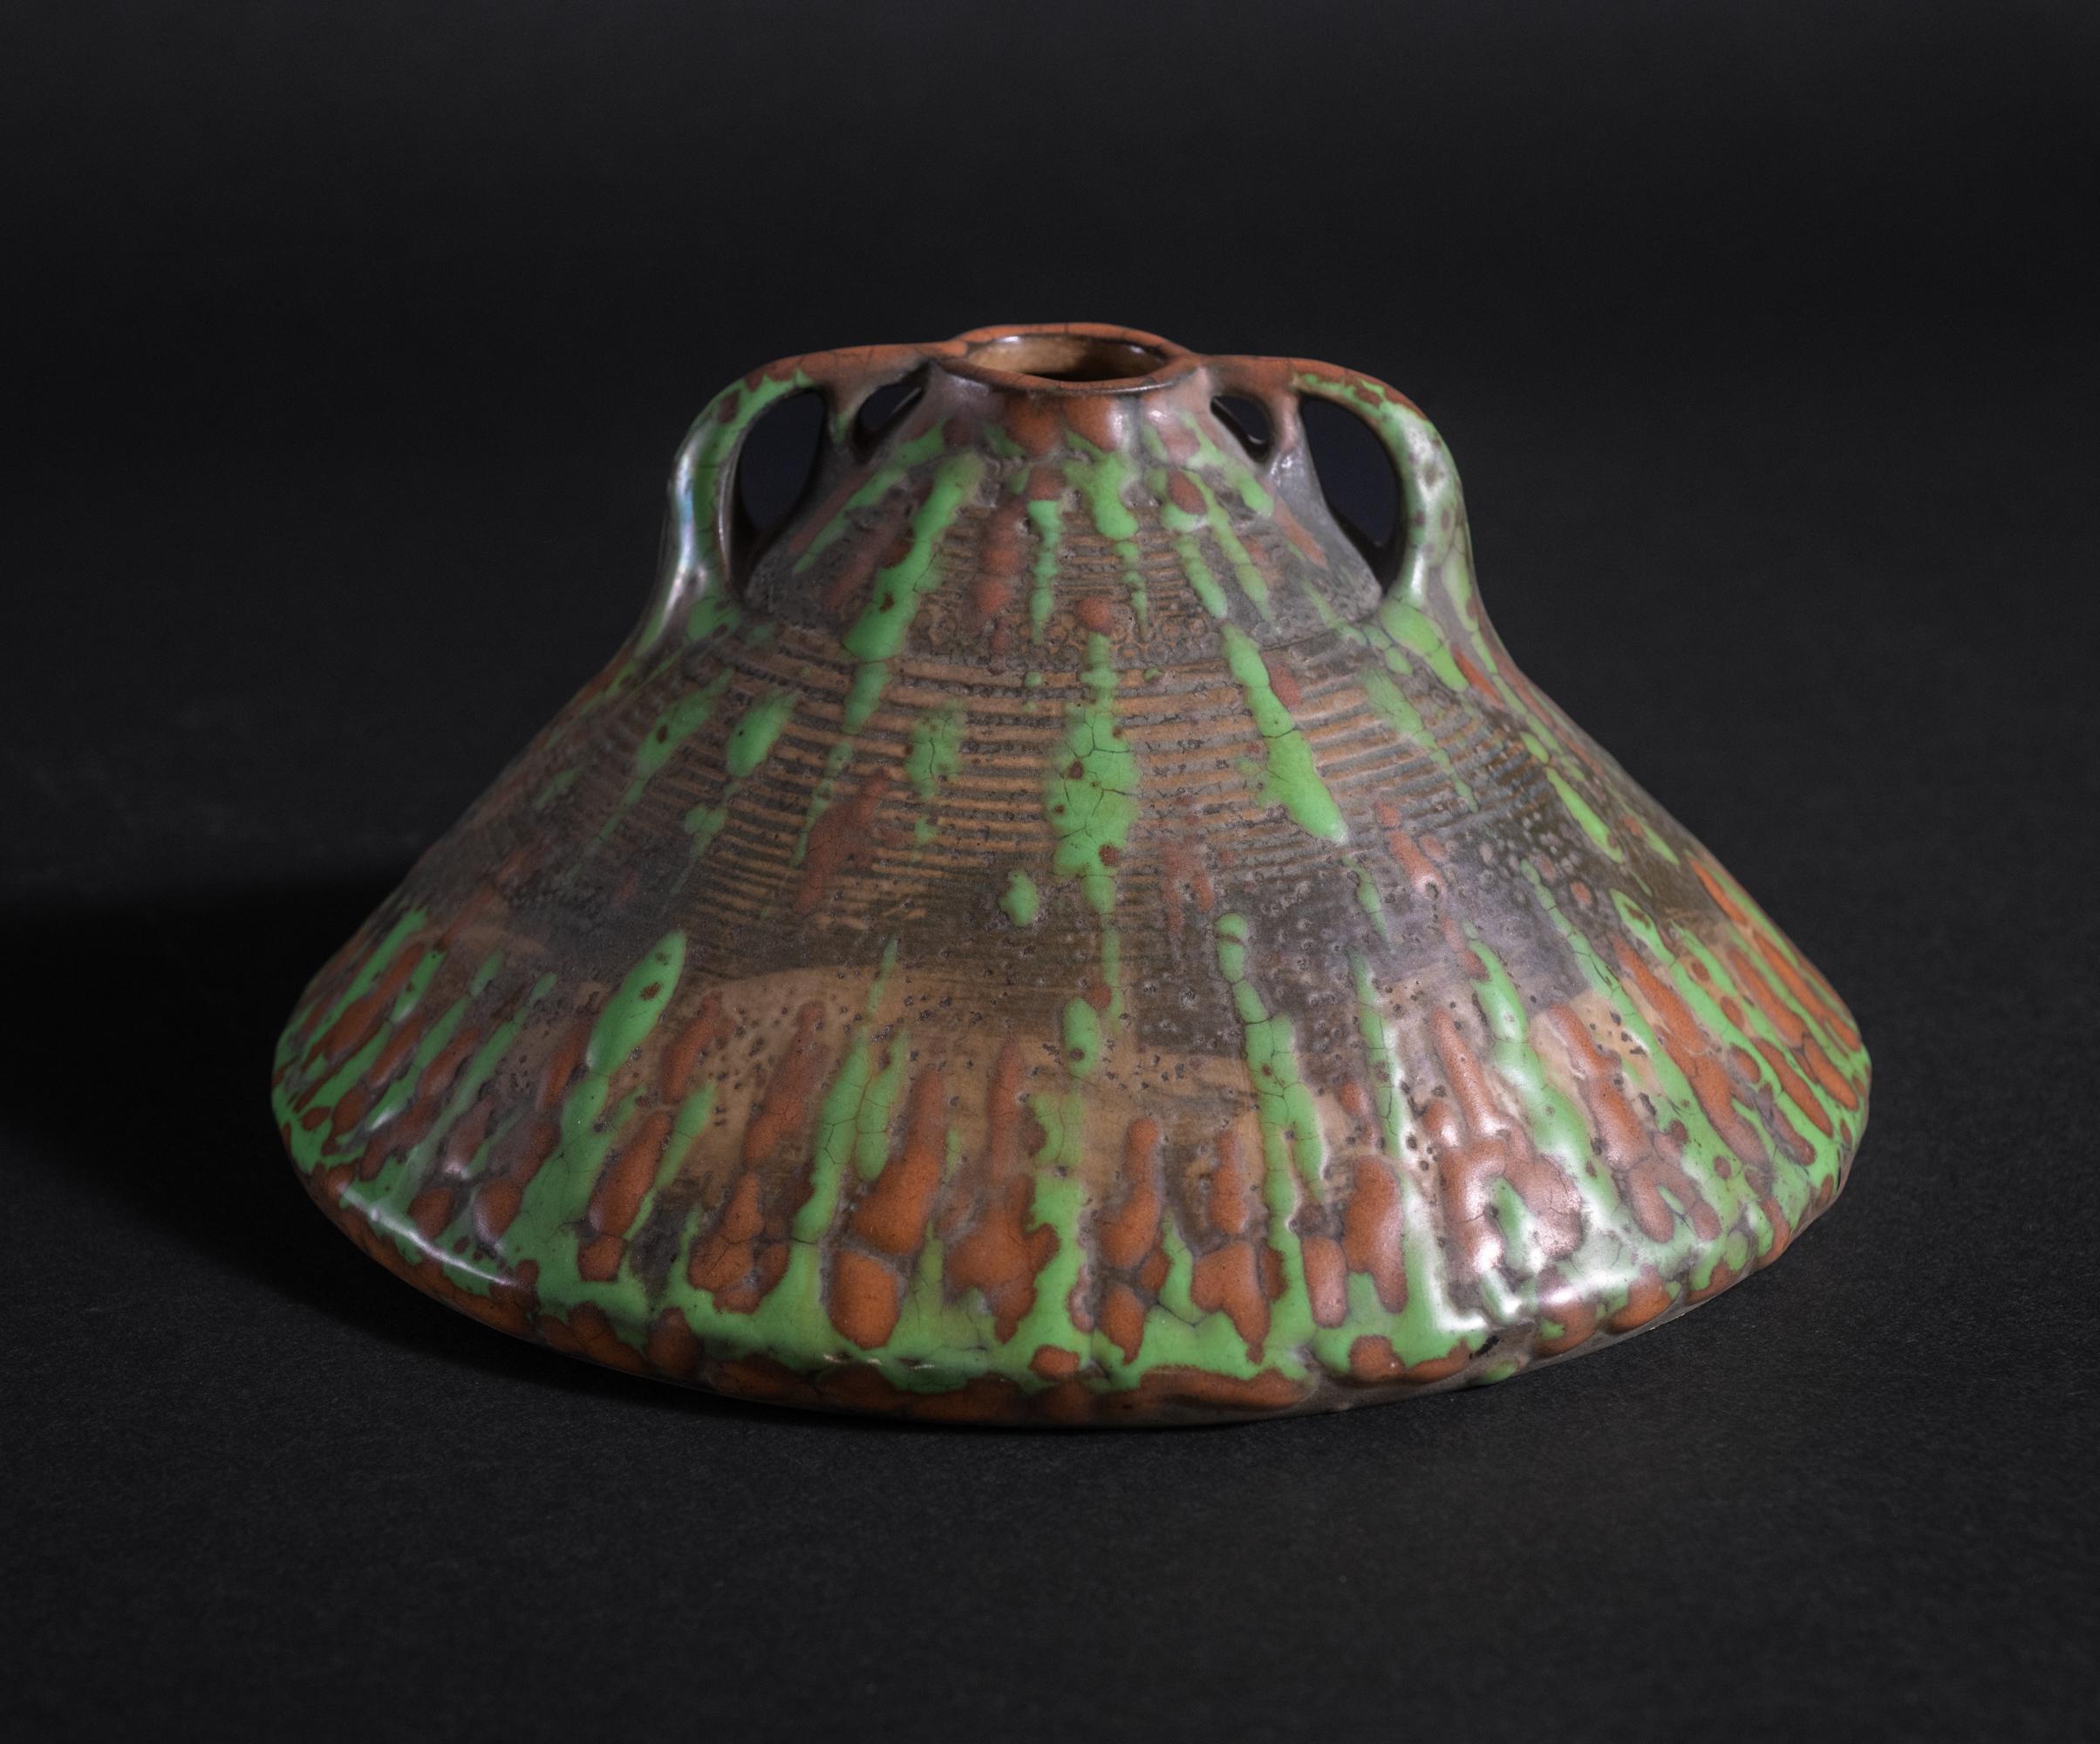 Paul Dachsel était le gendre d'Alfred Stellmacher, le fondateur de la société de poterie Amphora à Turn-Teplitz, alors en Autriche. Très peu de choses sont connues ou ont été écrites sur Dachsel. Il a travaillé comme designer à Amphora de 1893 à